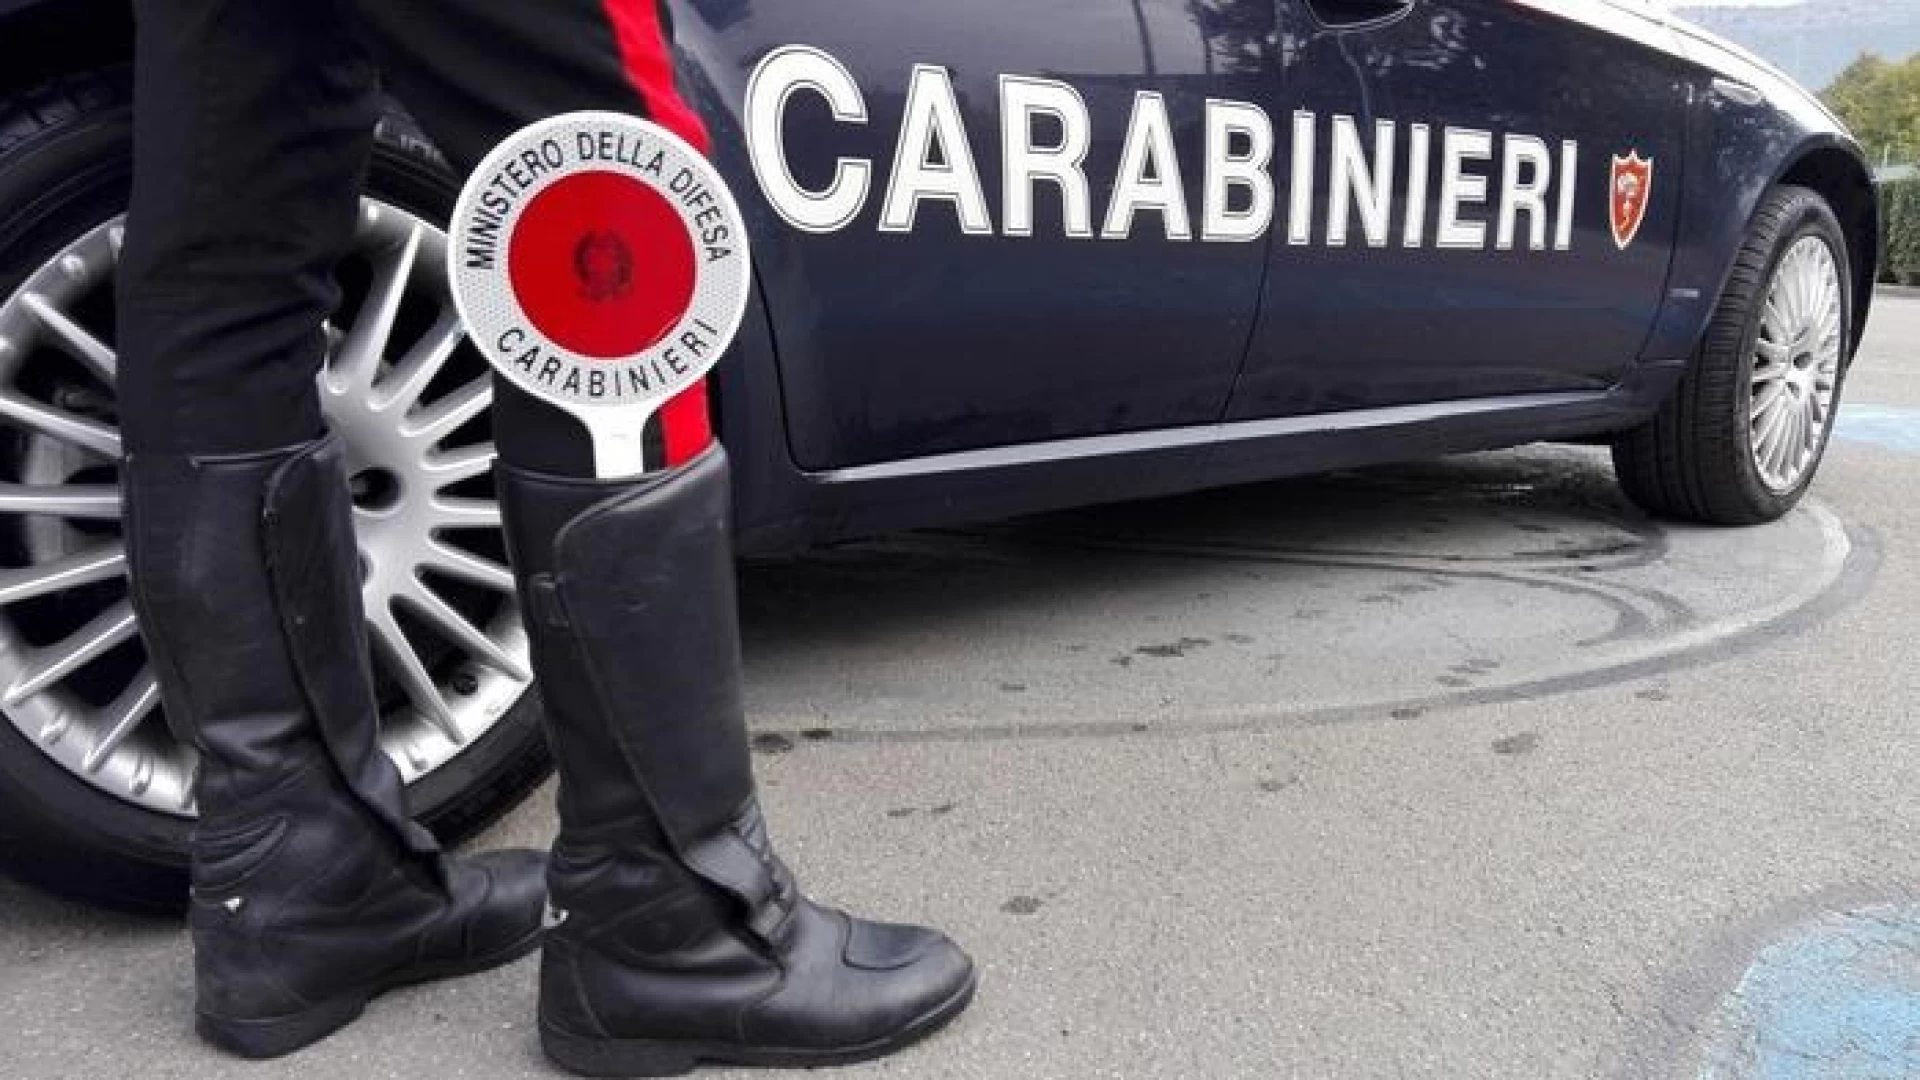 Isernia: la nota dei Carabinieri, diversi gli interventi sul territorio della Provincia di Isernia